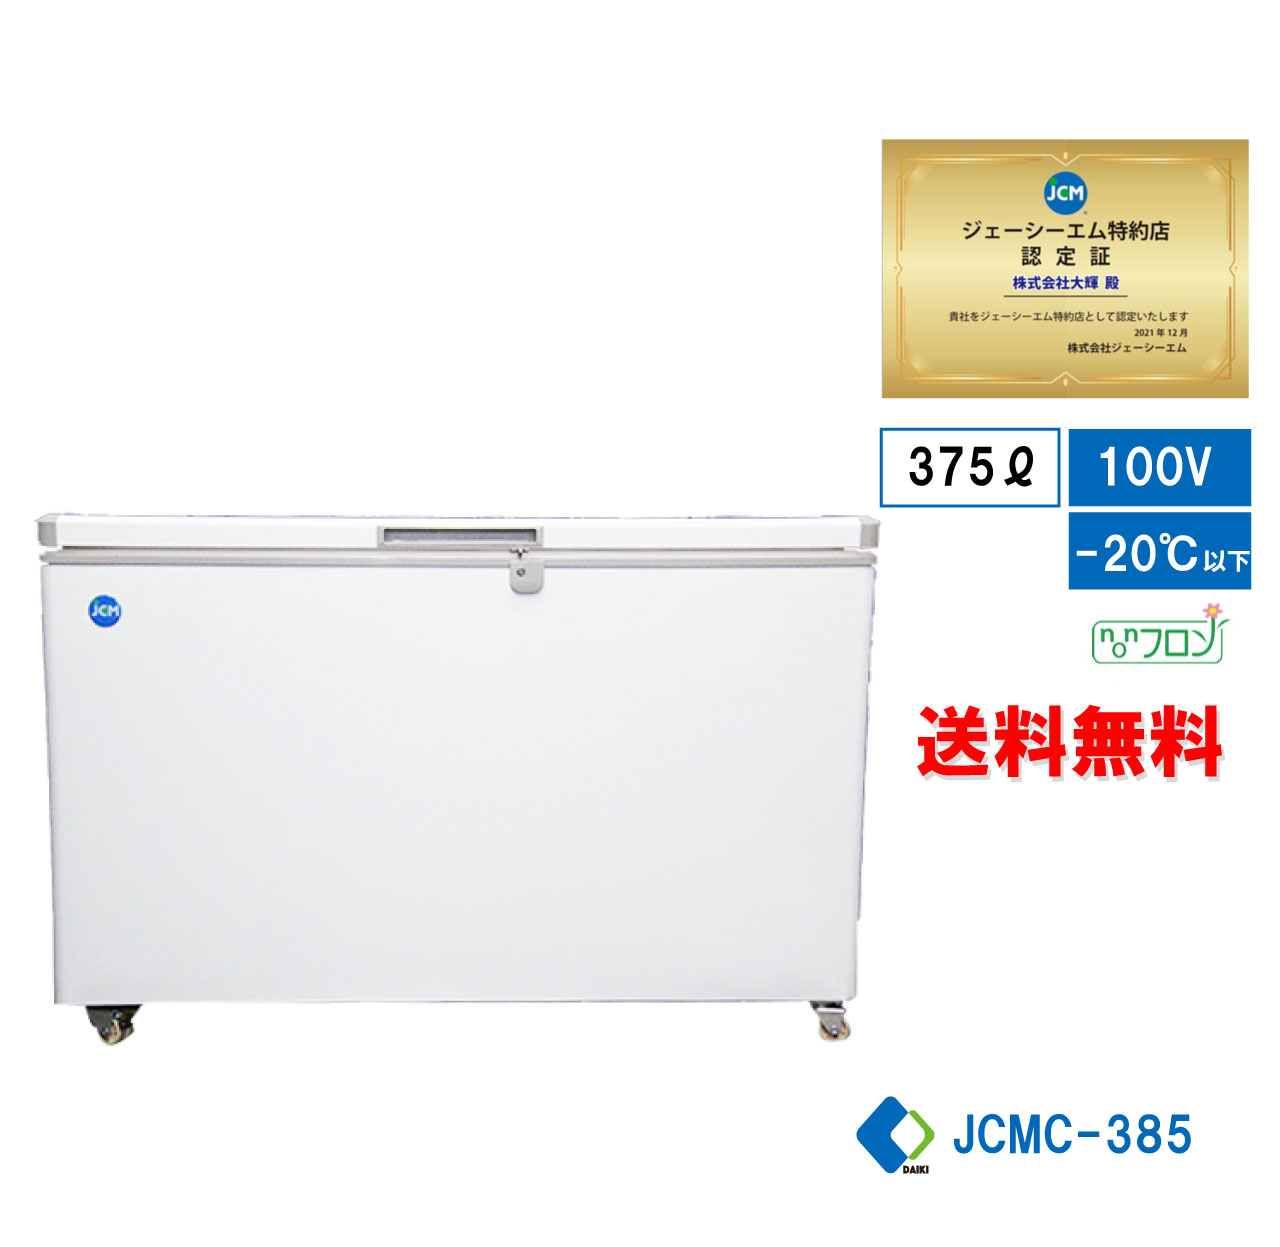 冷凍ストッカー 冷凍庫 保冷庫 業務用冷凍庫 JCMC-385 フリーザー